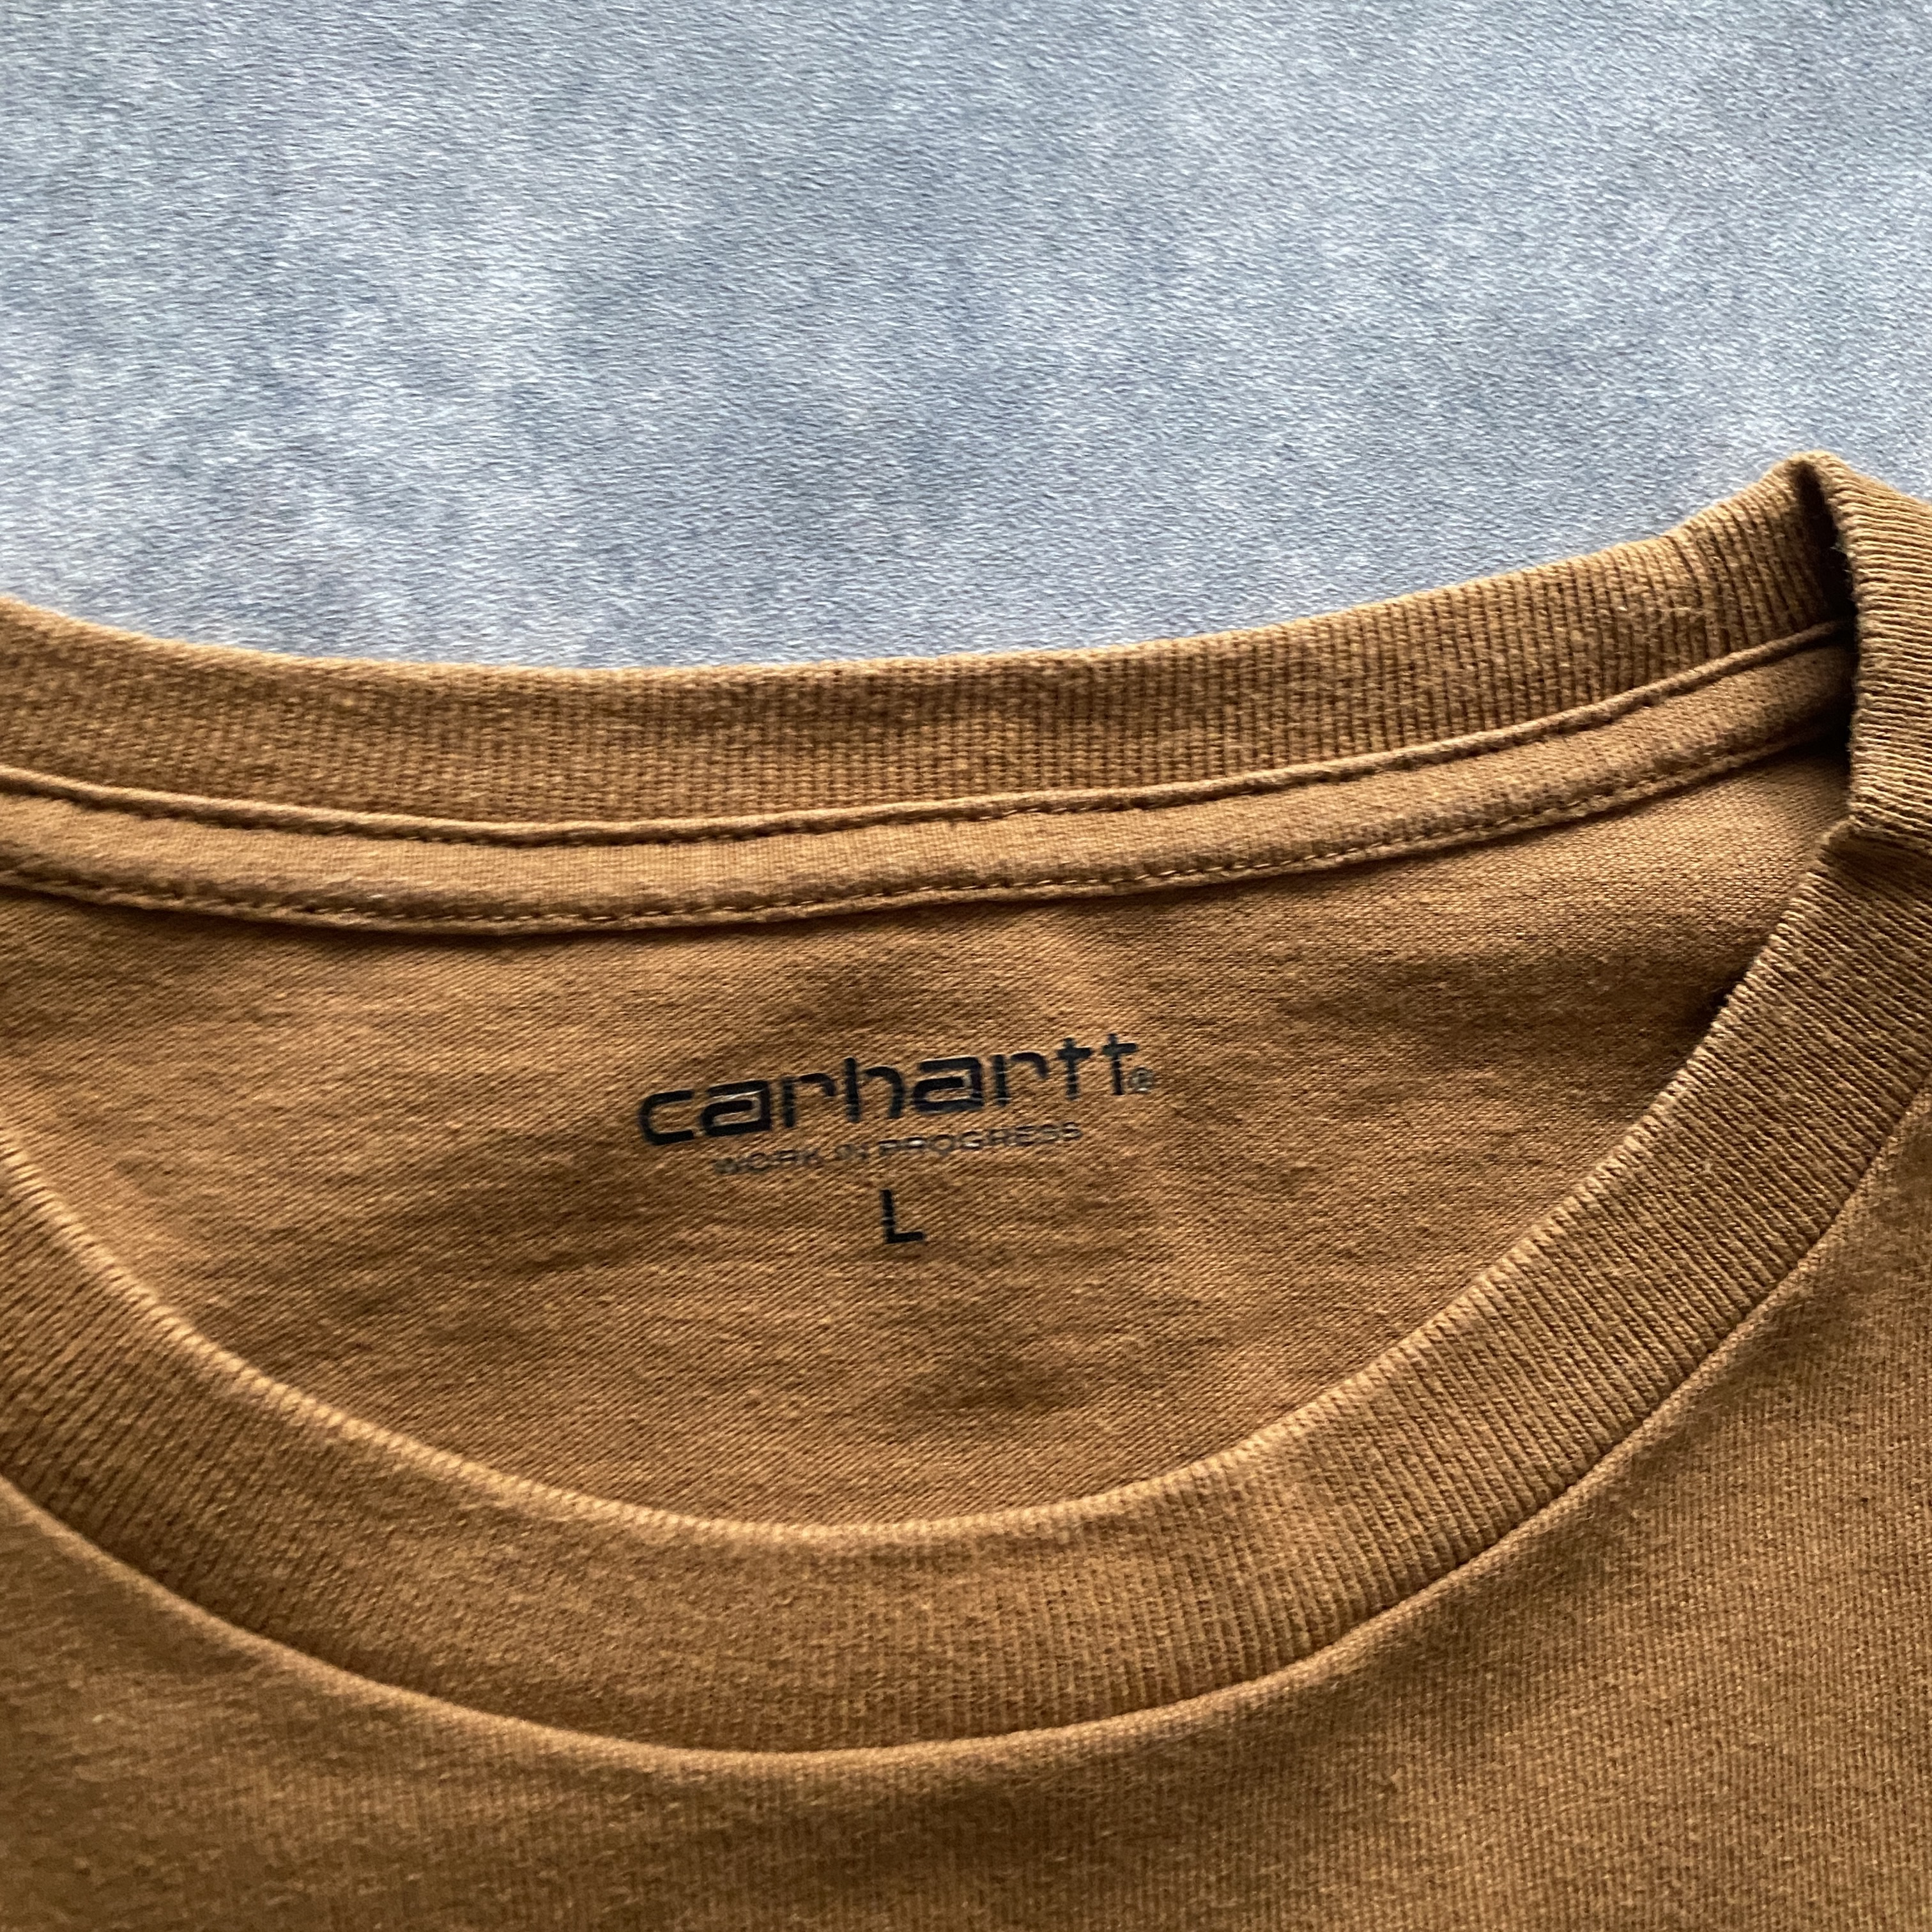 carhartt wip カーハート 刺繍ワンポイントロゴ ブラウン Tシャツ